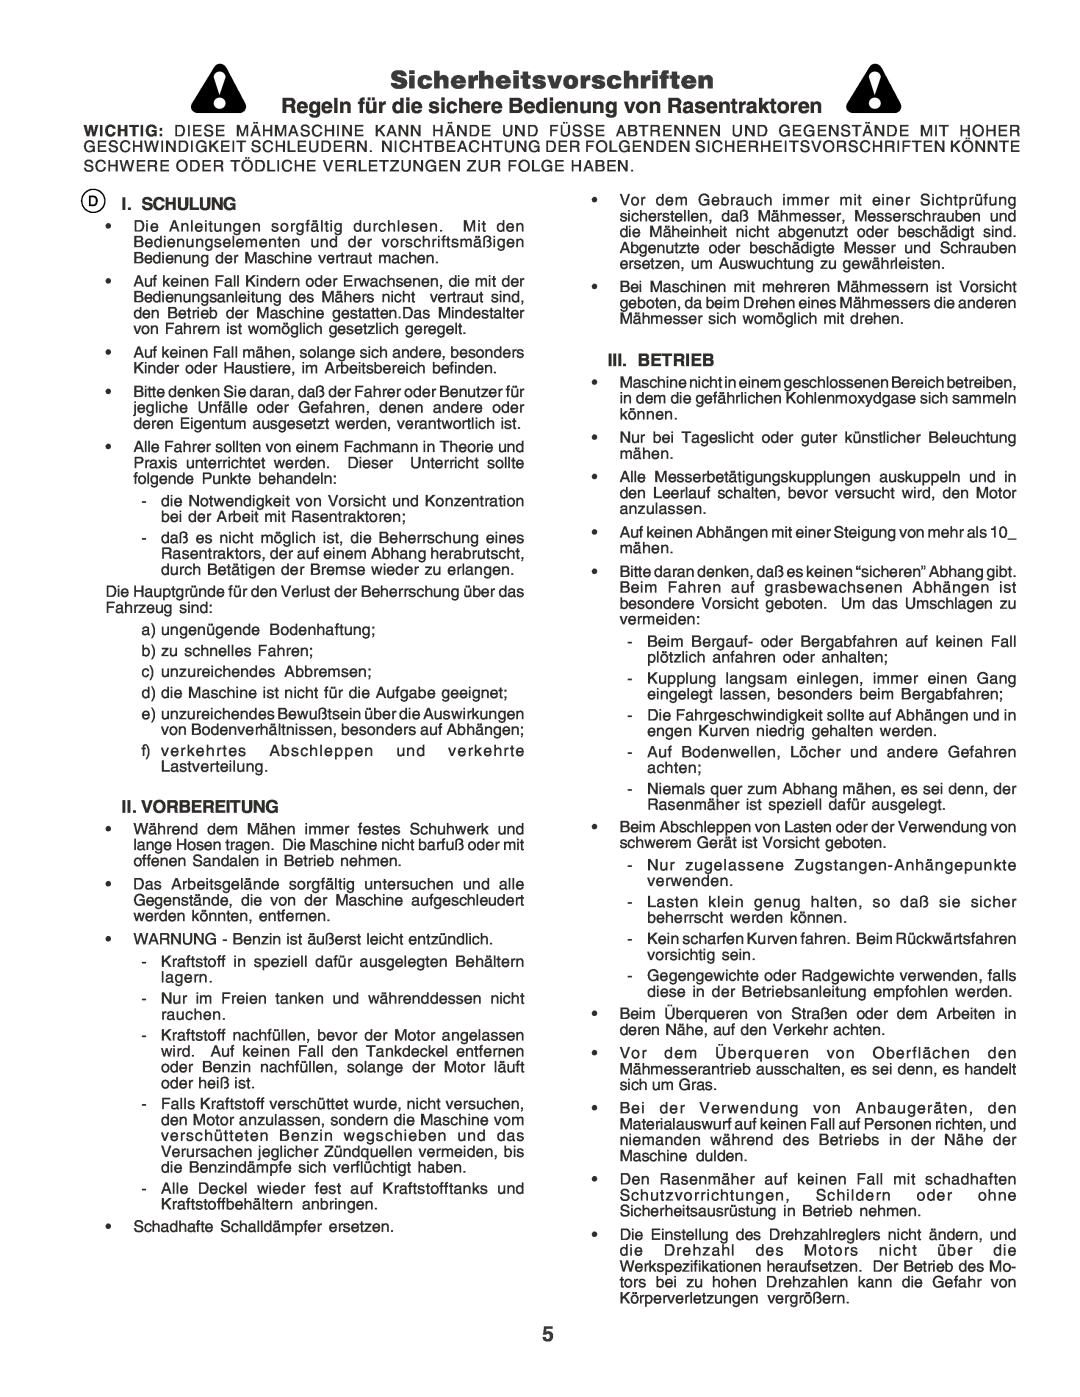 Husqvarna LT135 Sicherheitsvorschriften, Regeln für die sichere Bedienung von Rasentraktoren, I. Schulung, Iii. Betrieb 